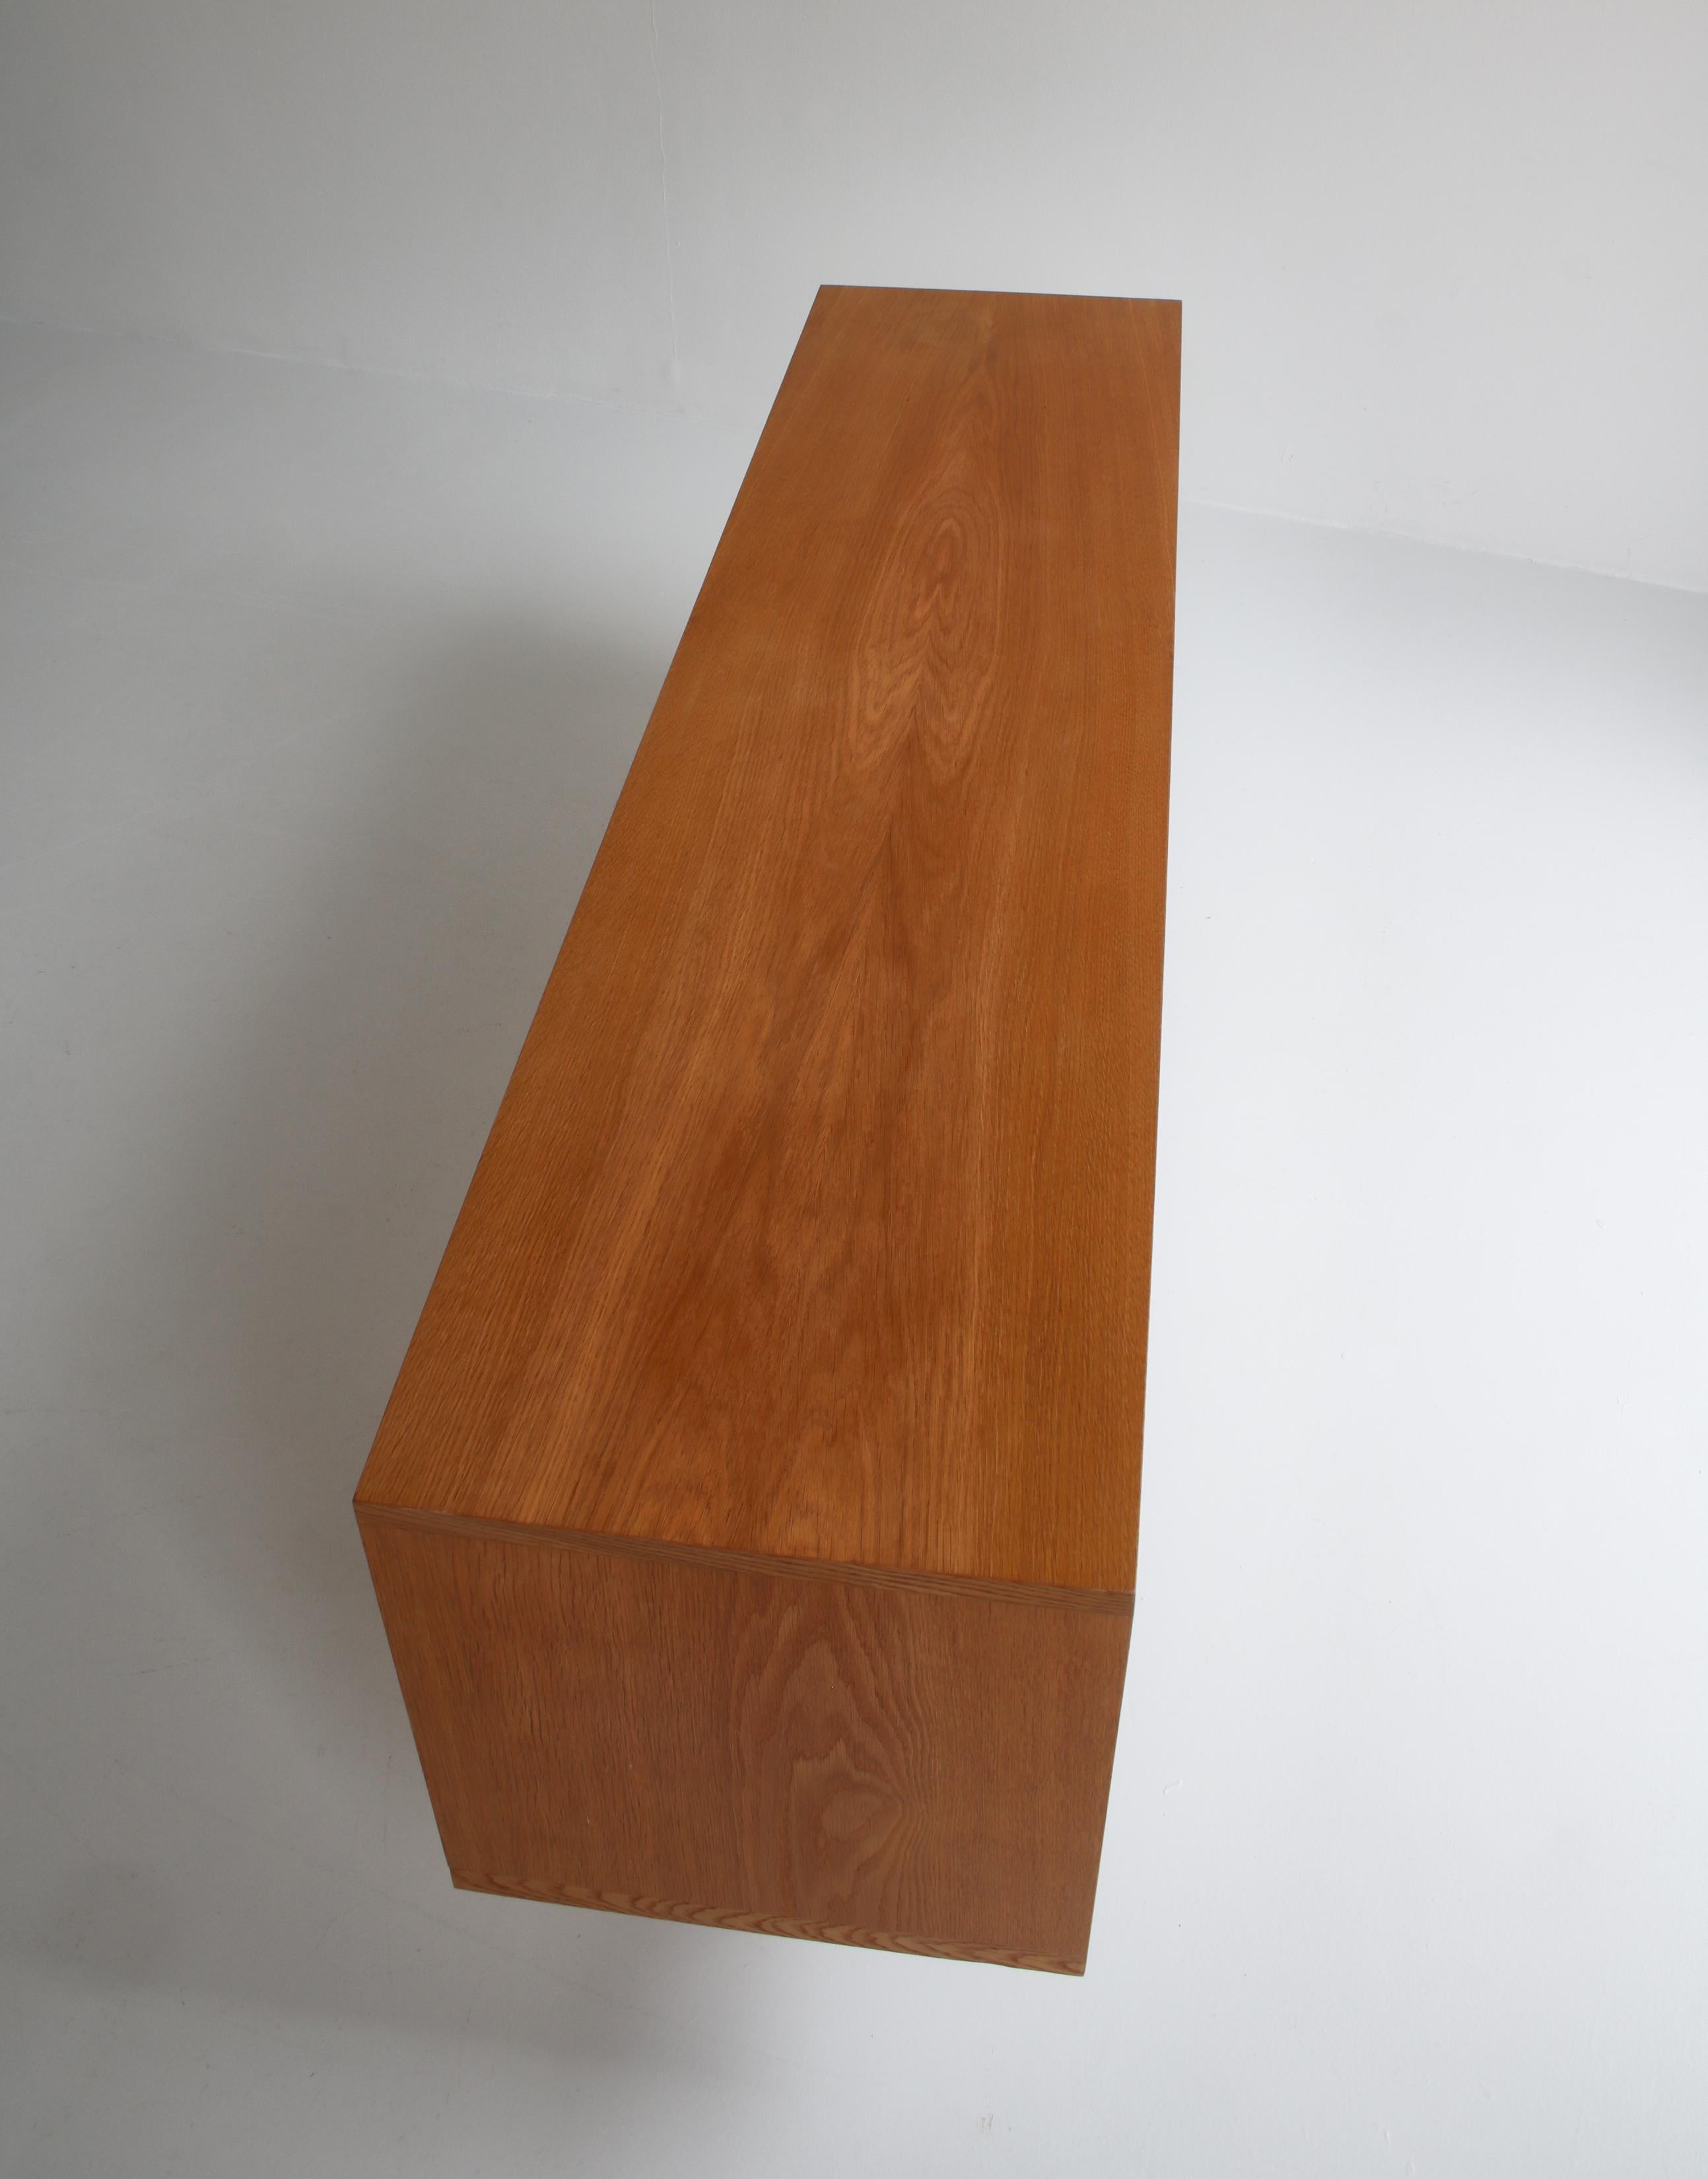 Hans J. Wegner Danish Modern Sideboard in Oak Model 